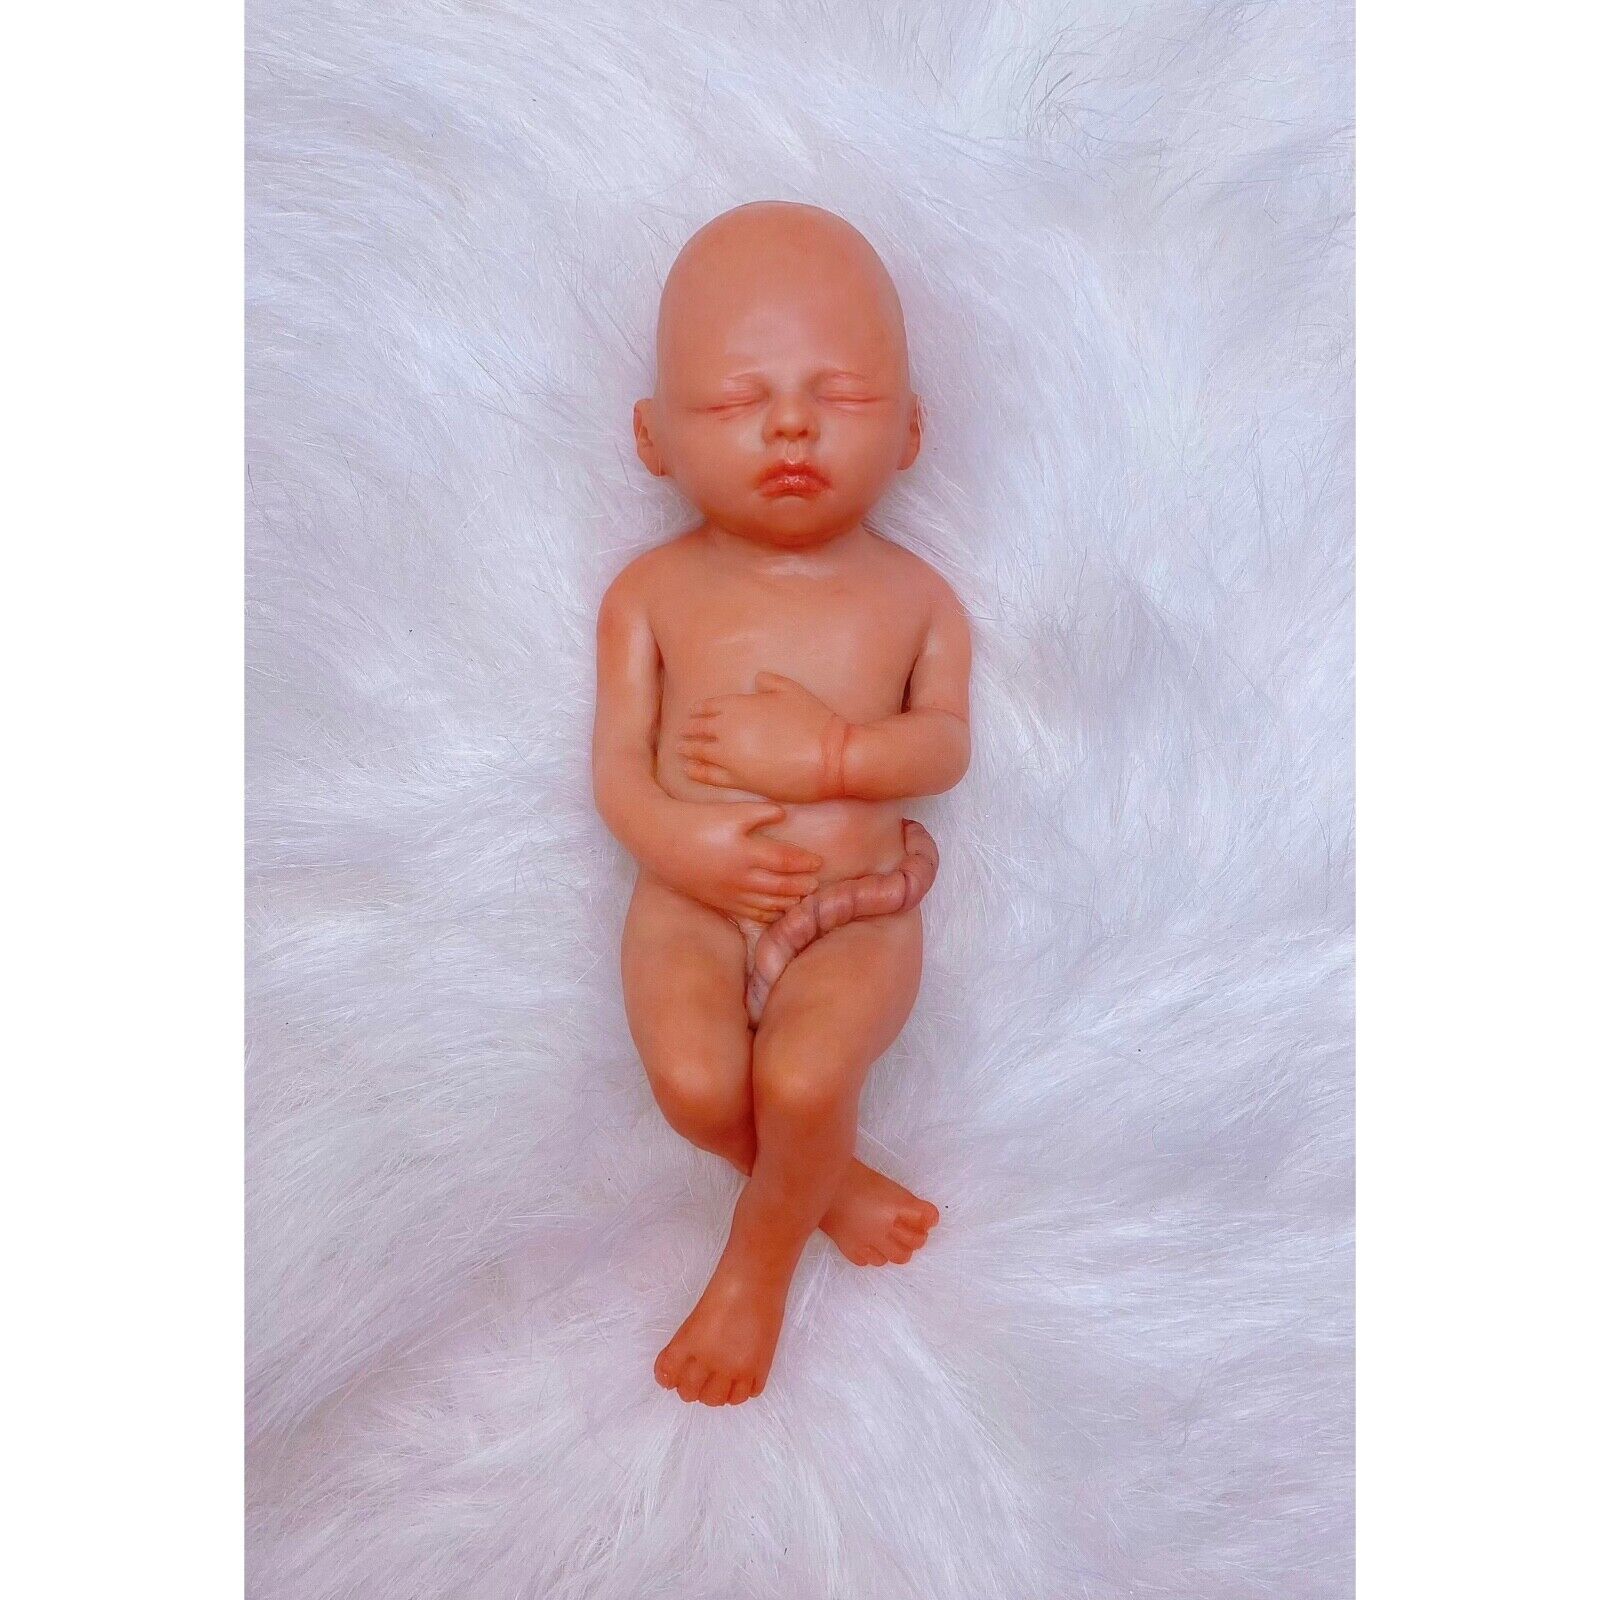 19 Weeks Baby Fetus, Stage of Fetal Development (Memorial/Miscarriage/Keepsake)